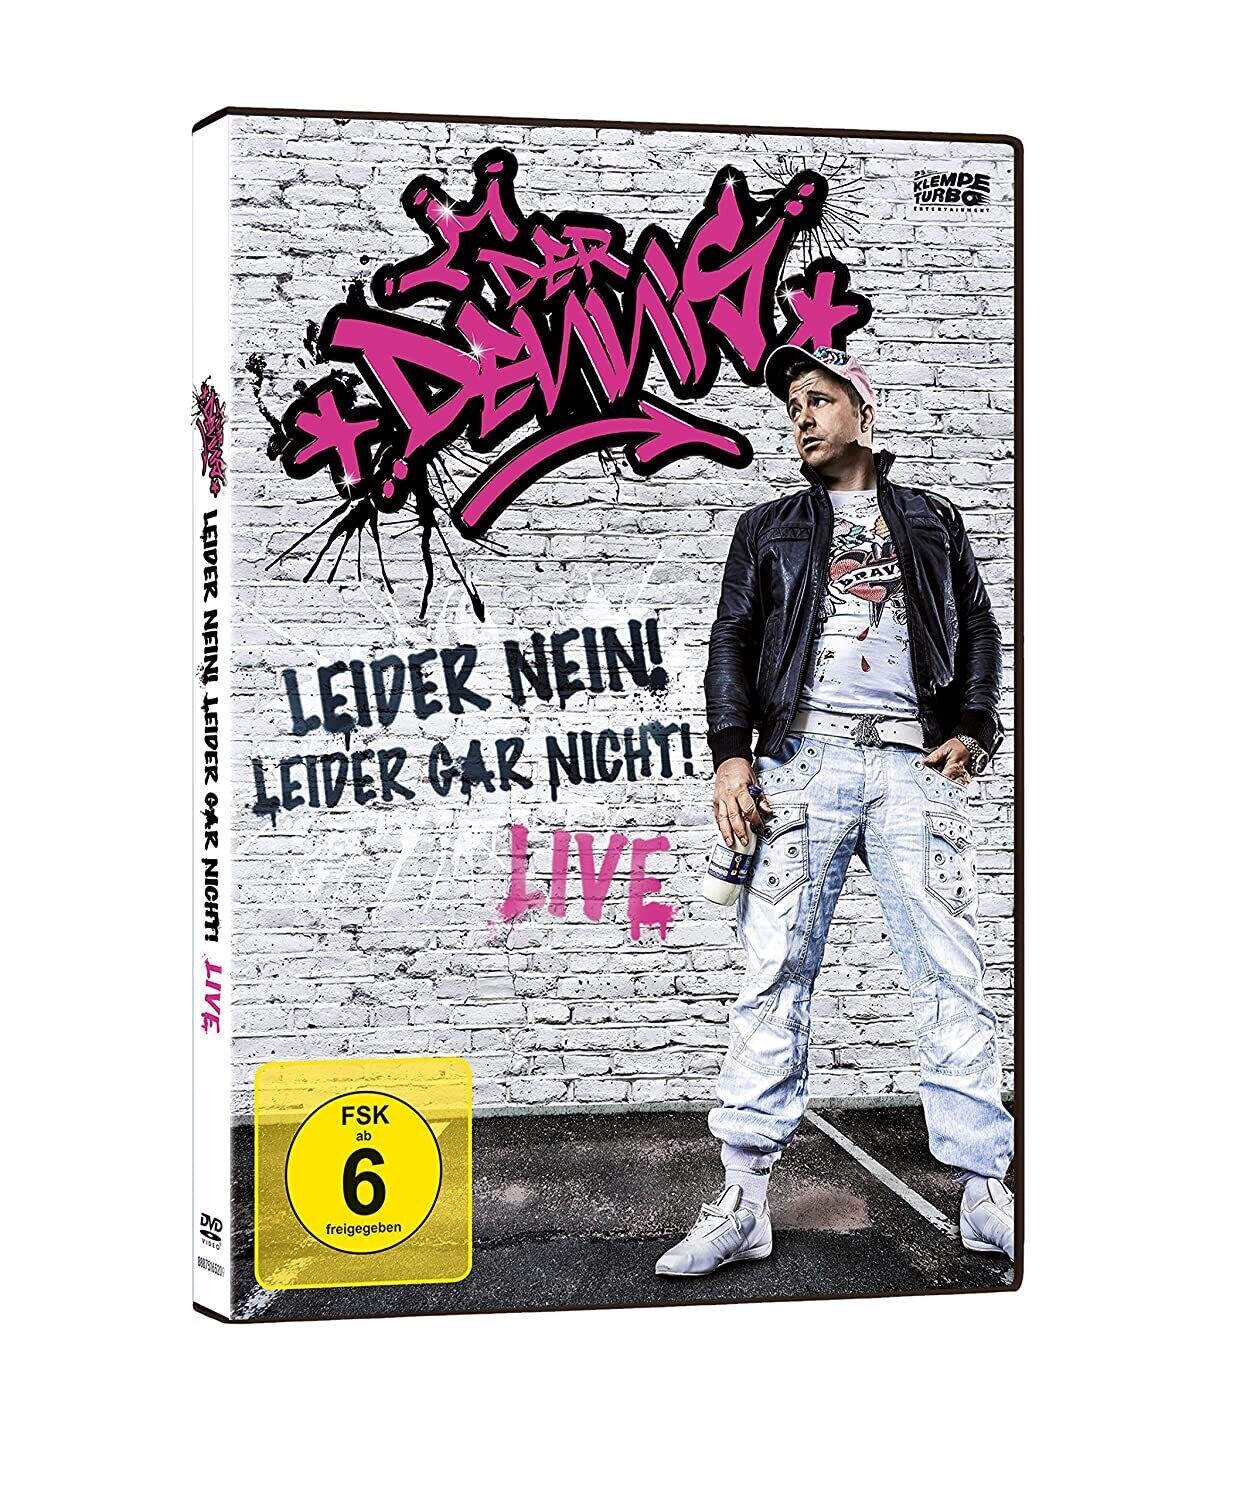 Der Dennis - Leider nein! Leider gar nicht! (2016) DVD